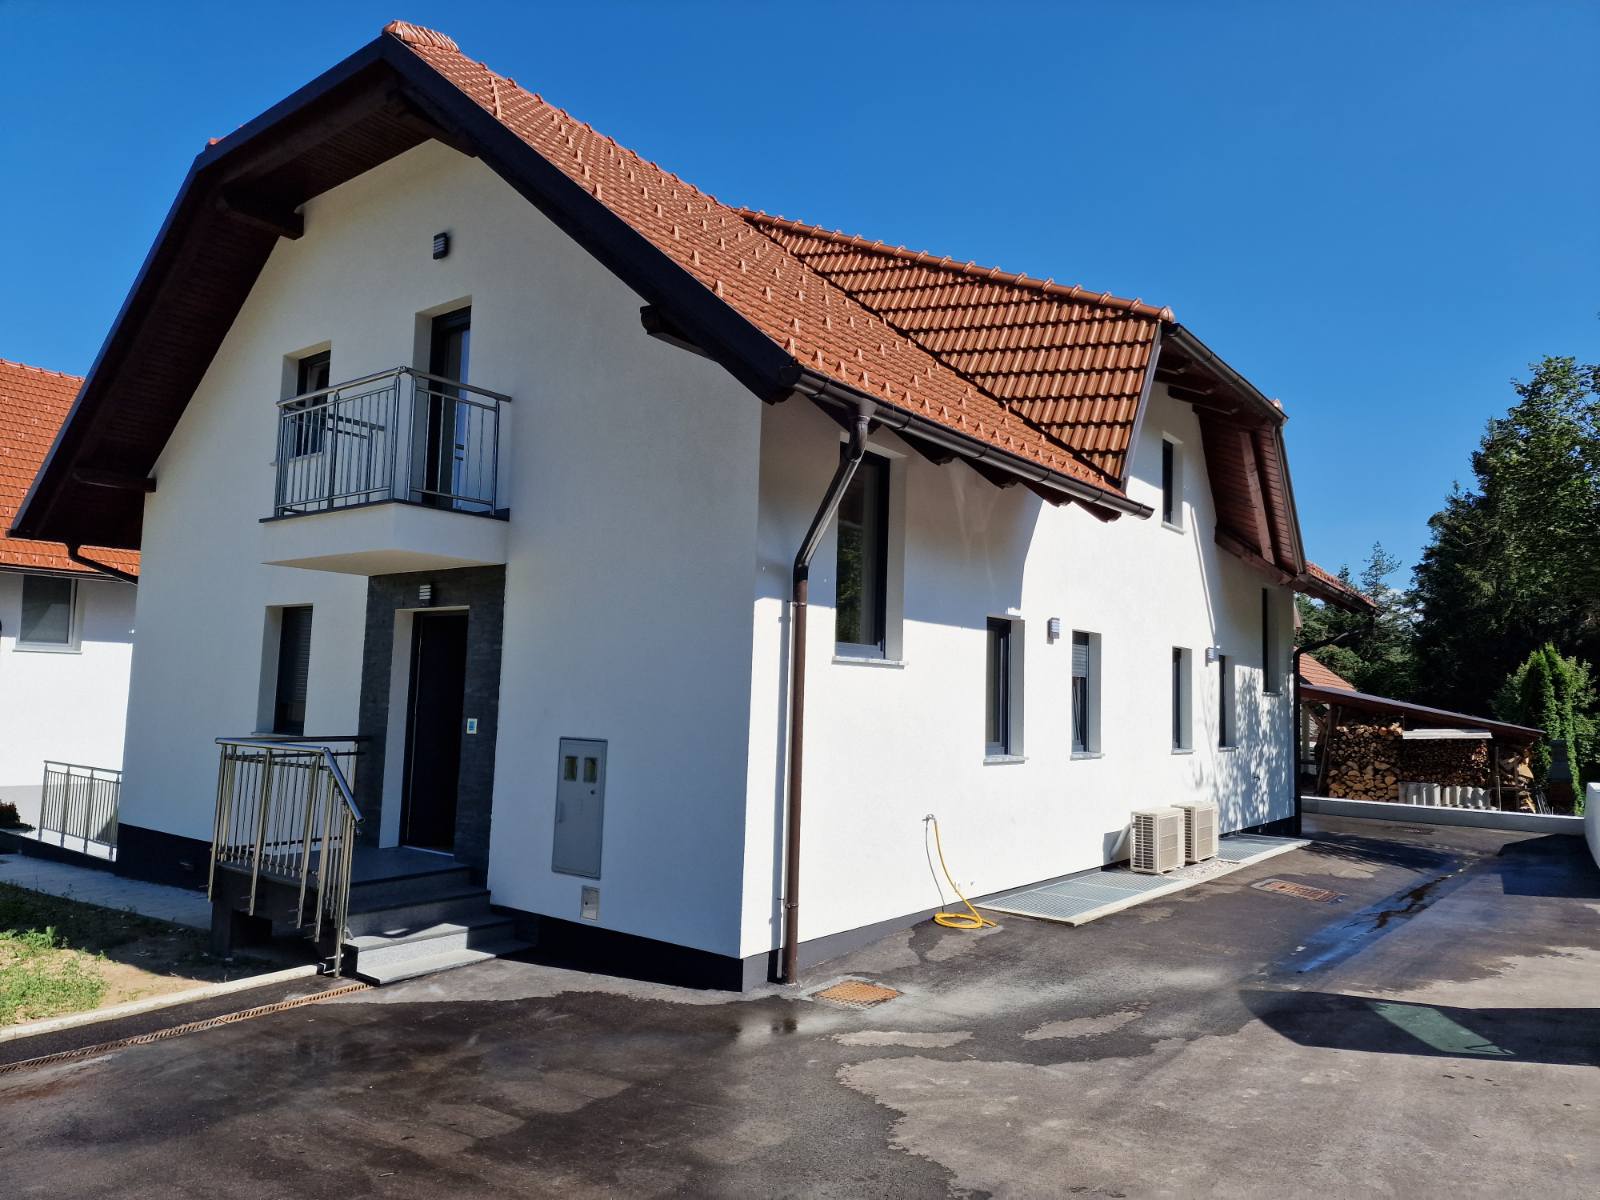 Hiša- Zapotok 184,8m2      320.000 eur    (stanovanje v dvostanovanjski stavbi)